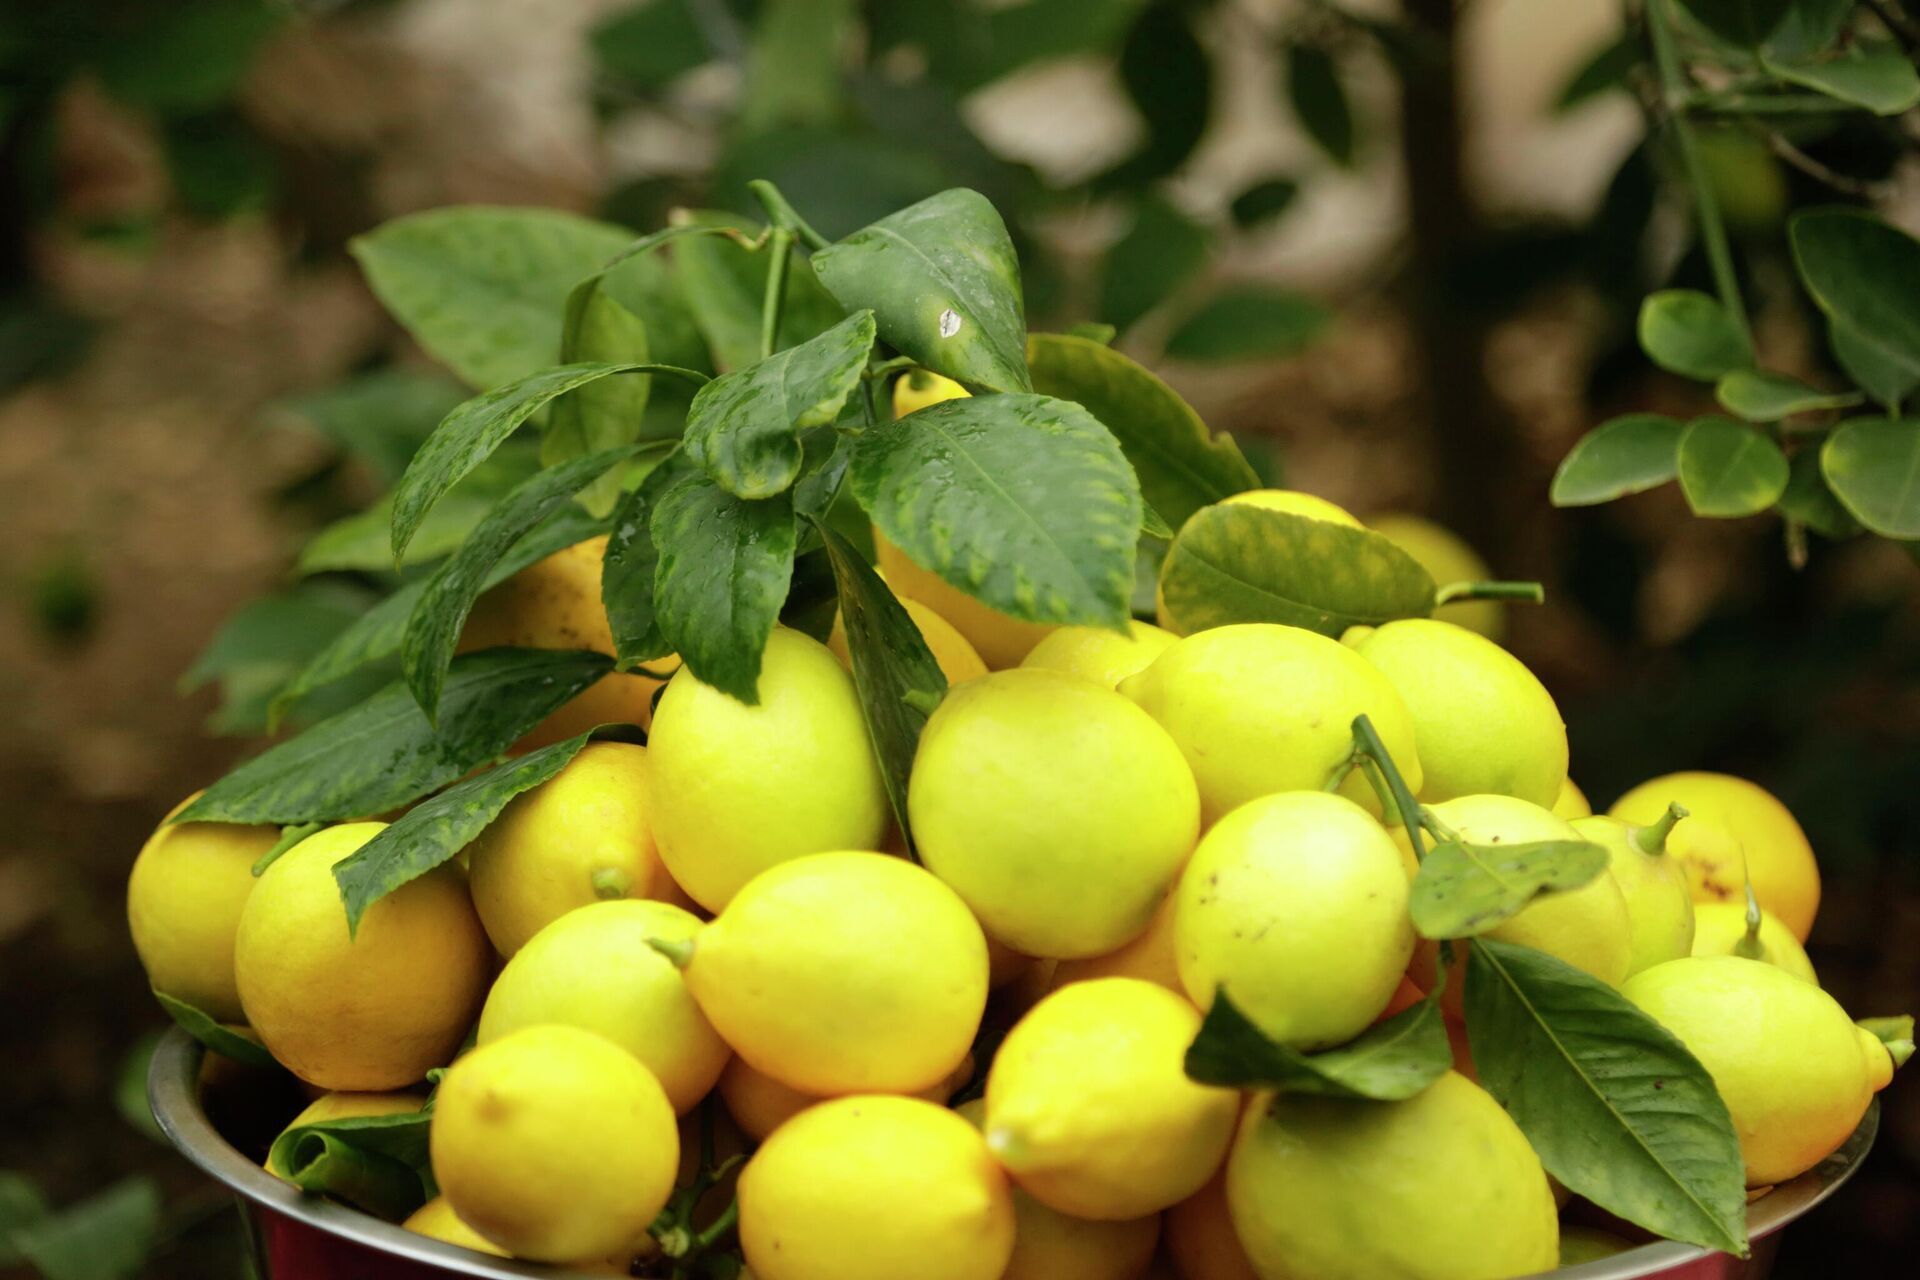 Лимон и пищевая сода — мощная лечебная смесь!